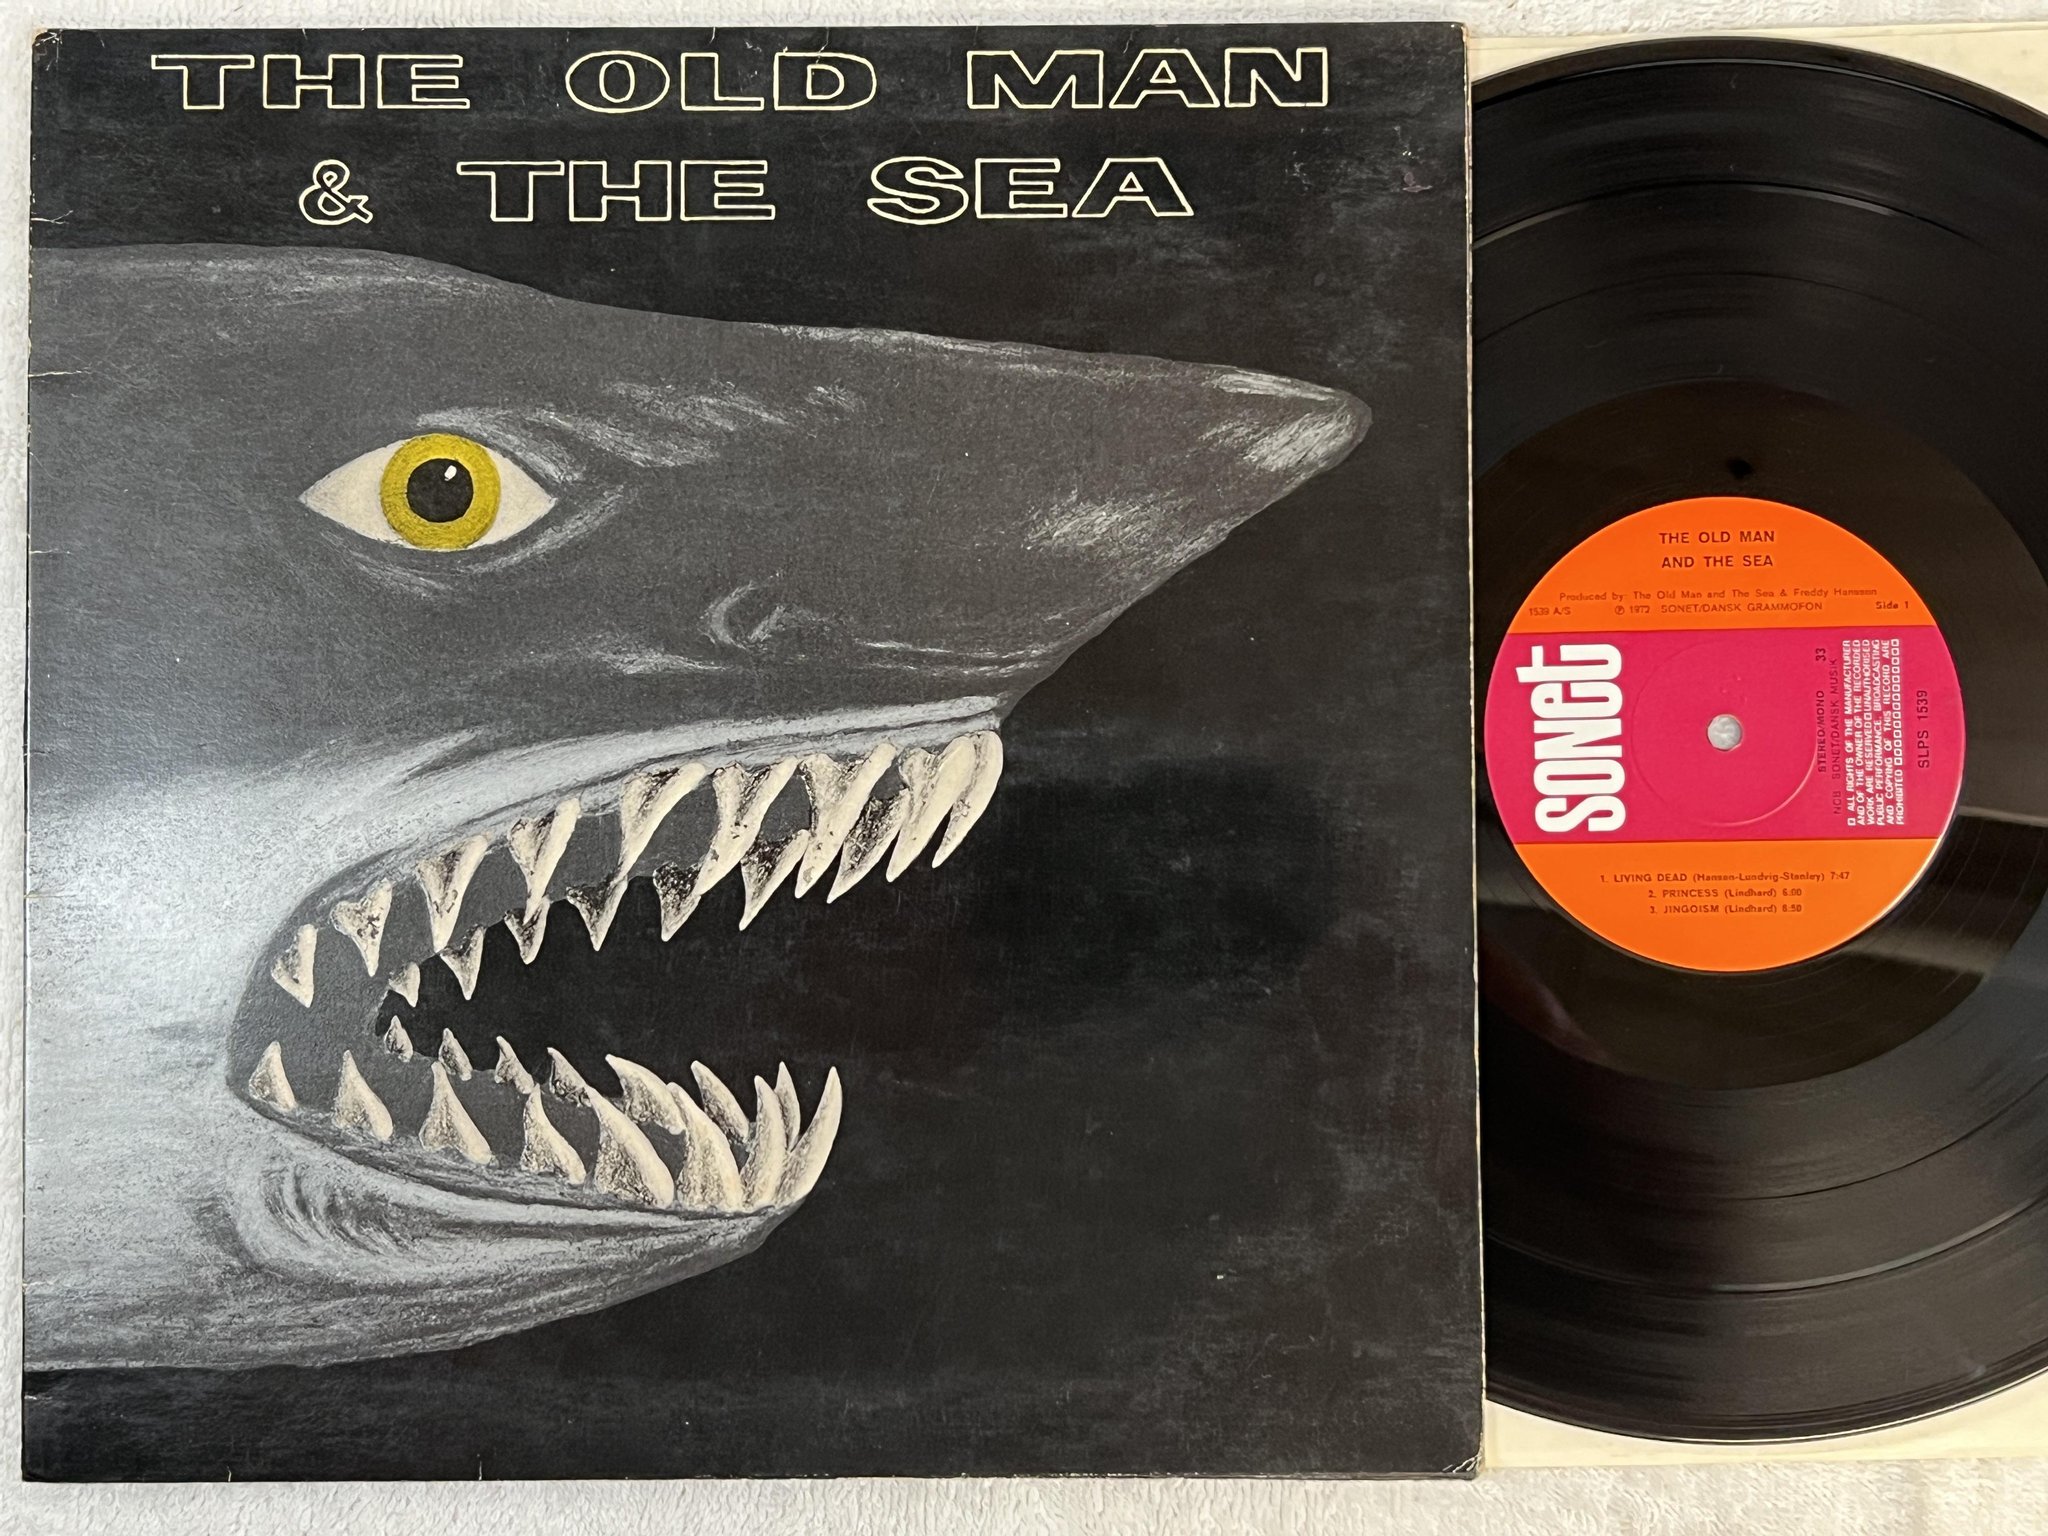 Omslagsbild för skivan THE OLD MAN & THE SEA s/t LP -72 Den SONET SLPS 1539 *** KILLER RARE PROG ***